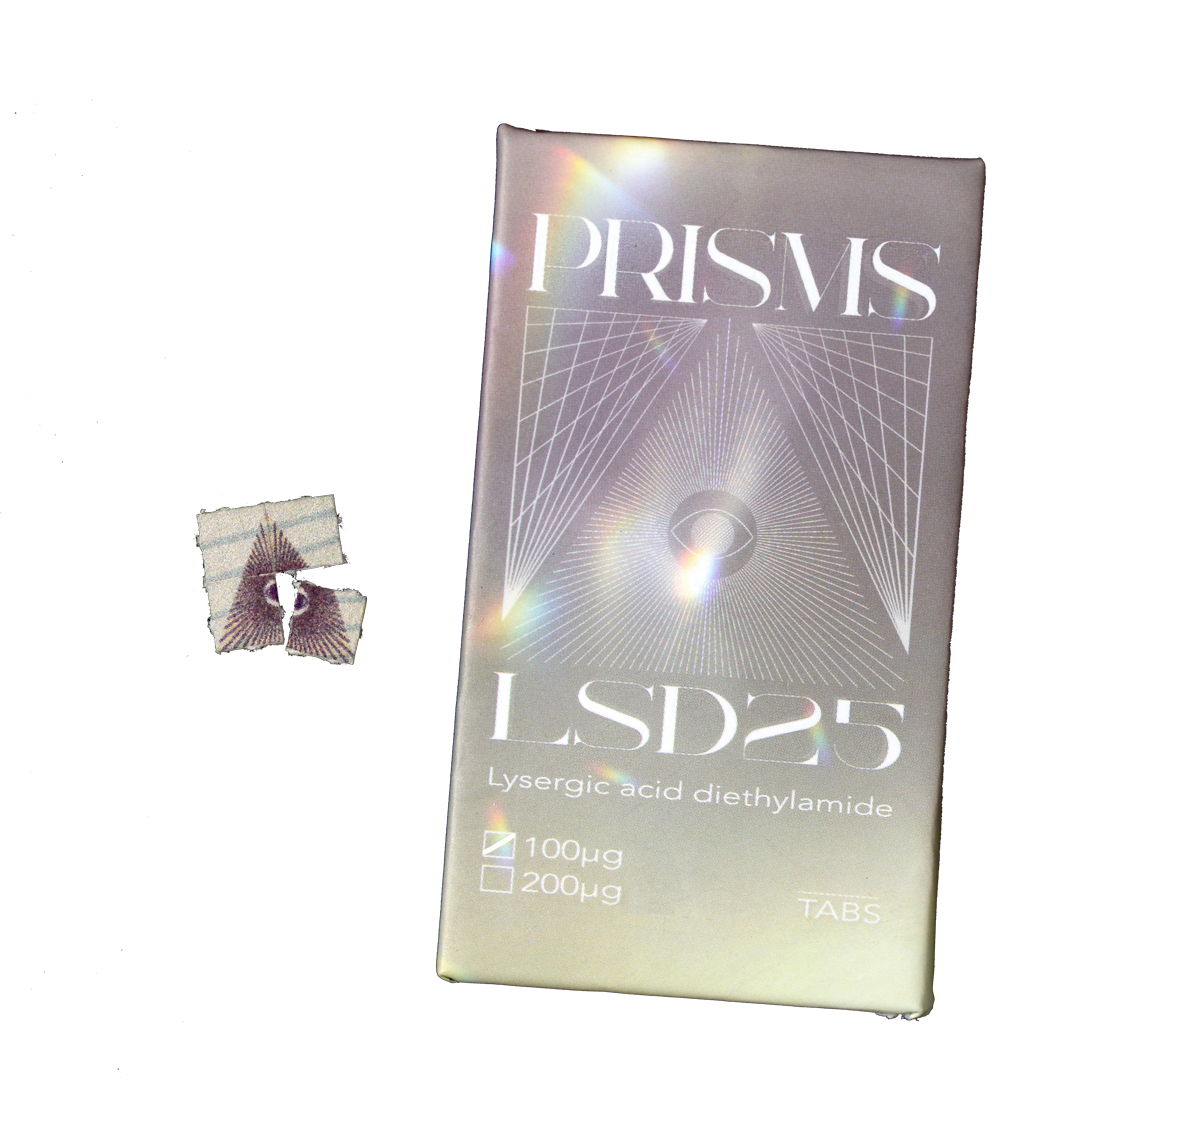 Prisms LSD 25 Blotter Sheets Tabs - 100ug LSD - Silver